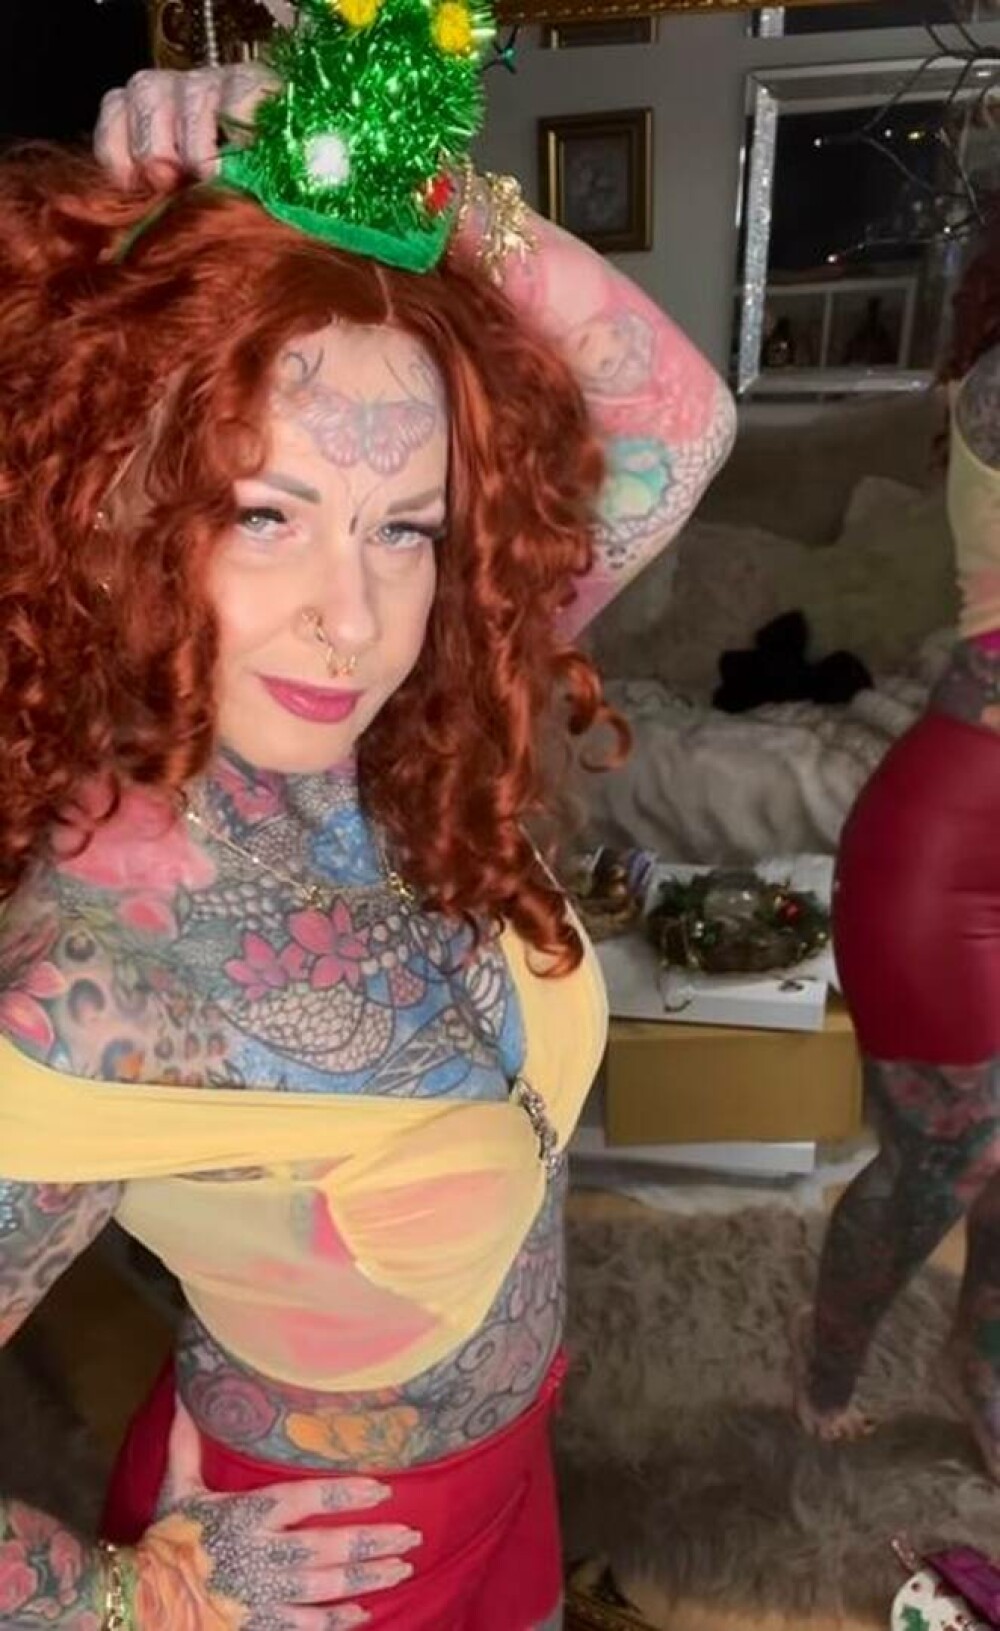 Bunicuța tatuată care a făcut furori pe internet cu felul în care arată. A cheltuit peste 26.000 de euro pe artă corporală - Imaginea 25